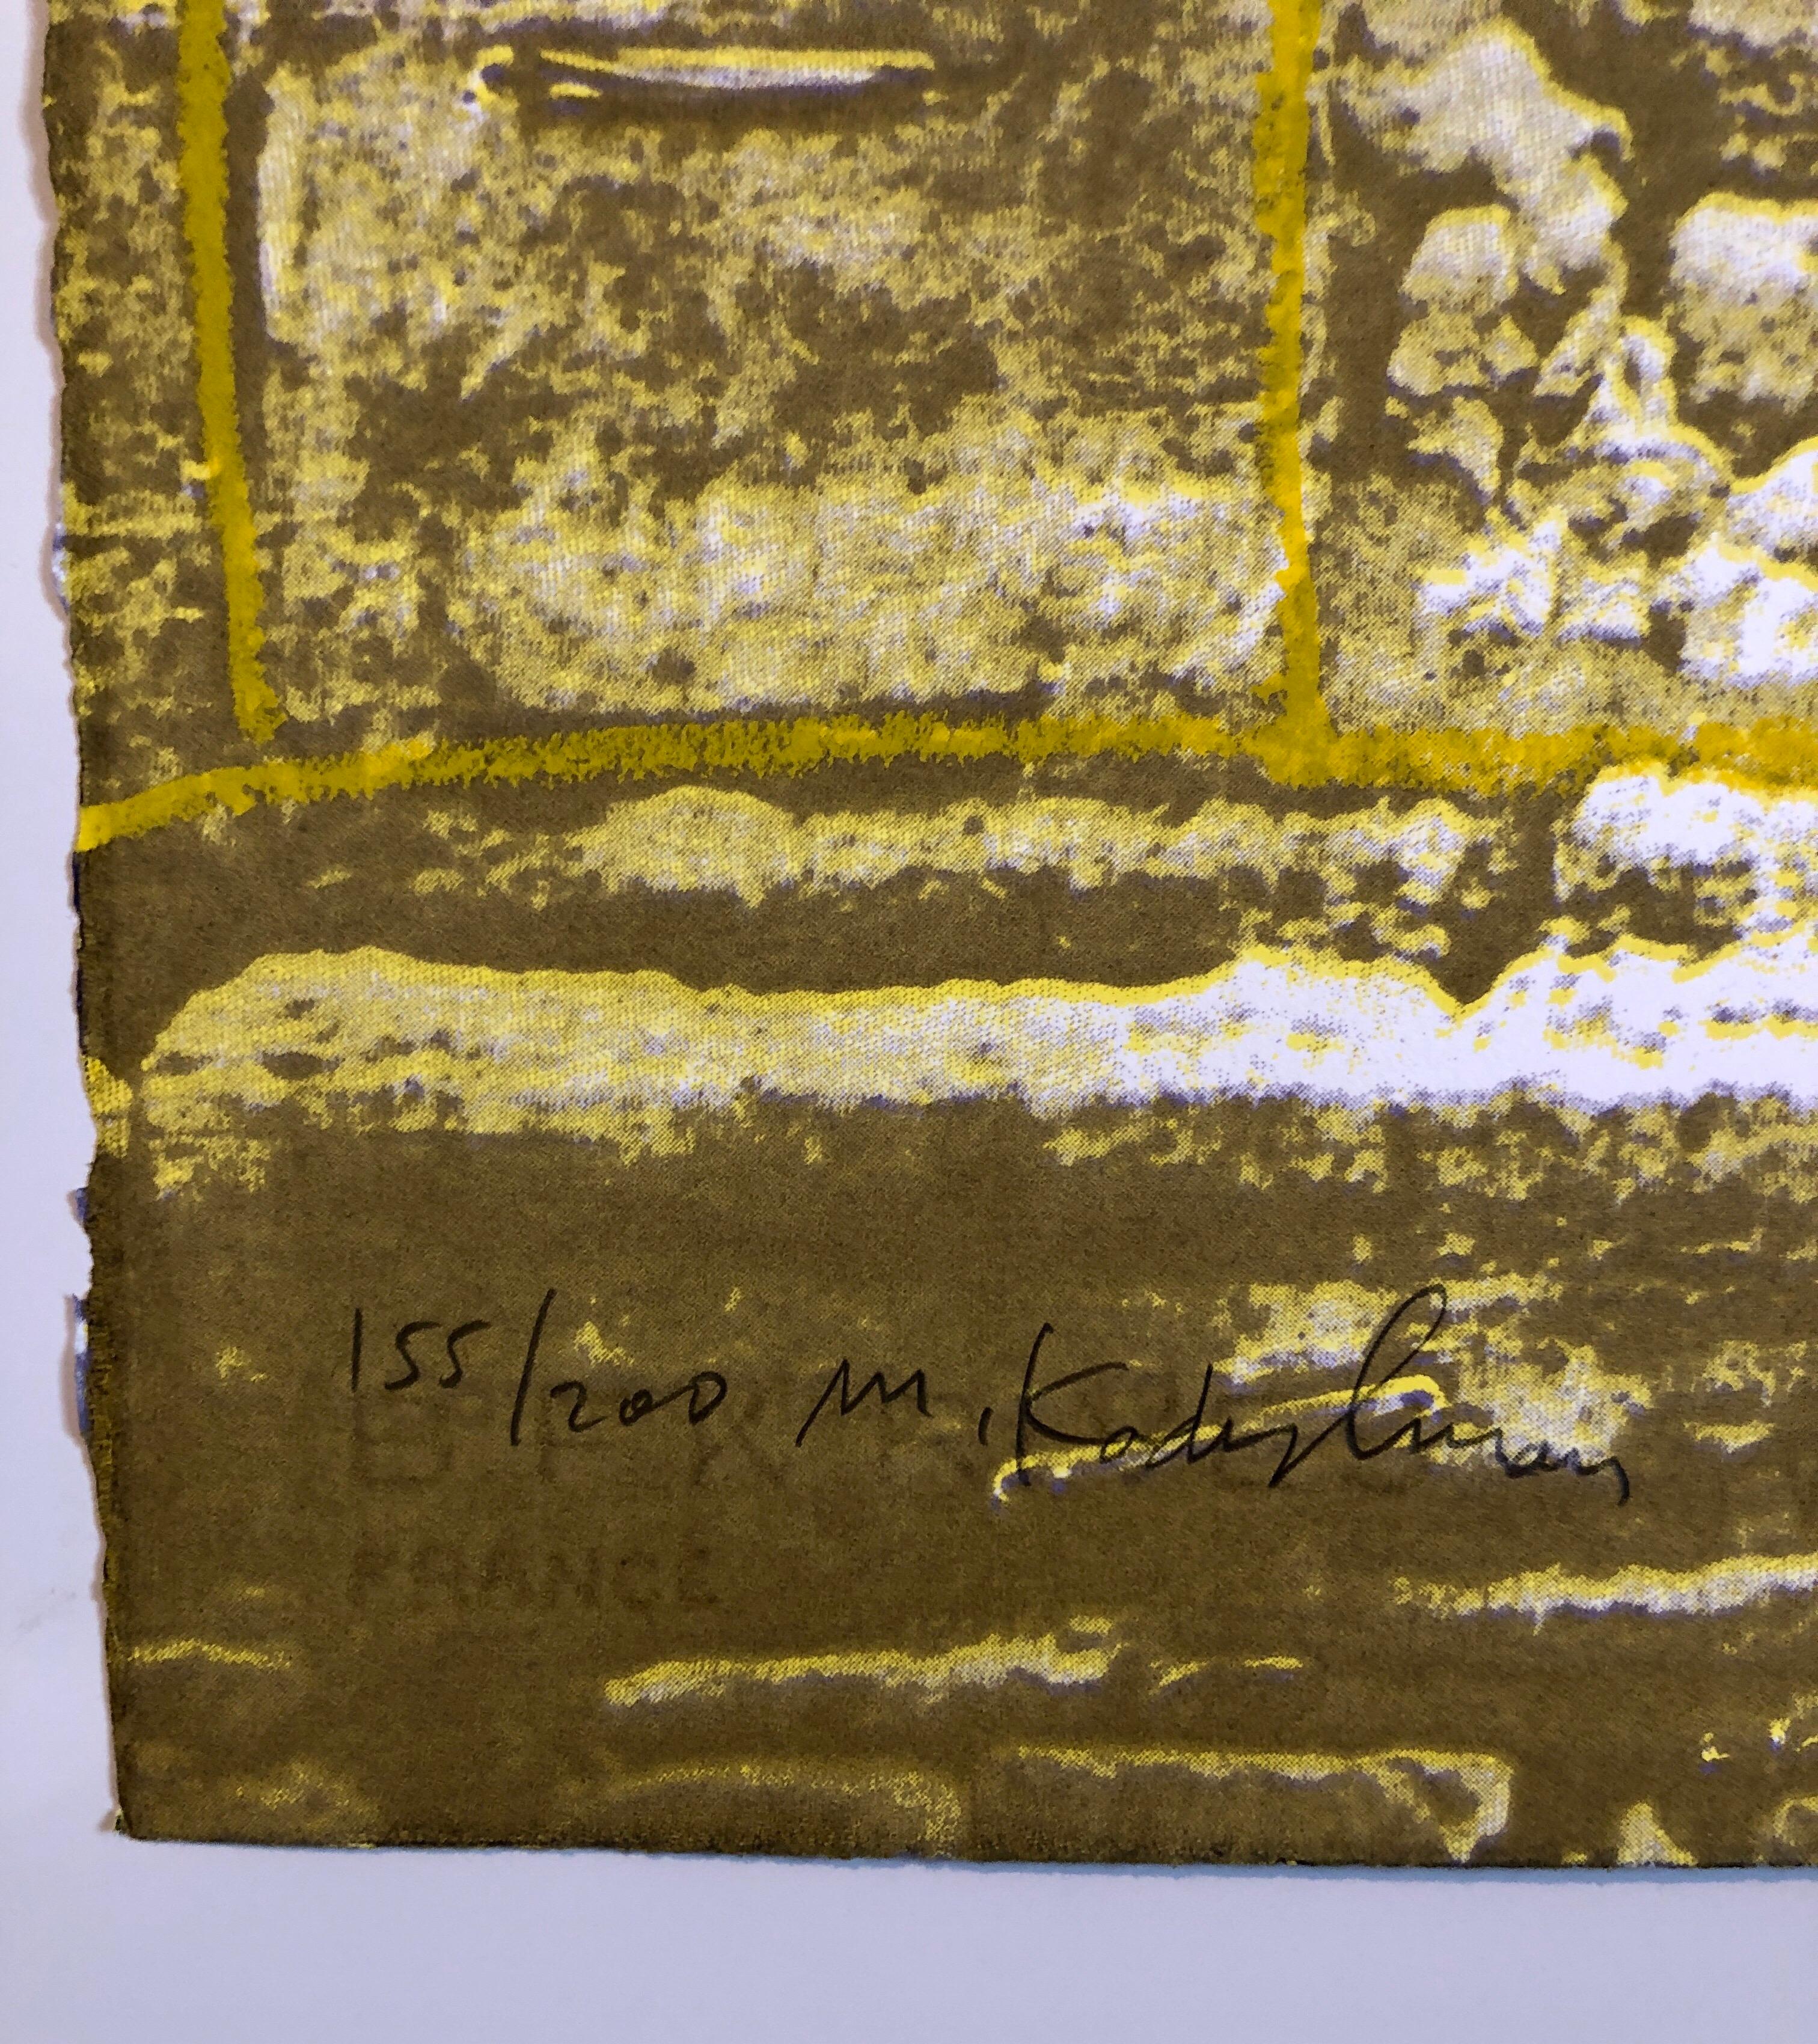 Auf französischem Kunstdruckpapier BFK Rives. Dies ist ein Foto-Siebdruck der Kotel, der Westmauer in Jerusalem, überlagert mit einer Kadishman-Zeichnung. 
Menashe Kadishman wurde 1932 in Tel-Aviv geboren. Er ist Absolvent der St. Martin's School of